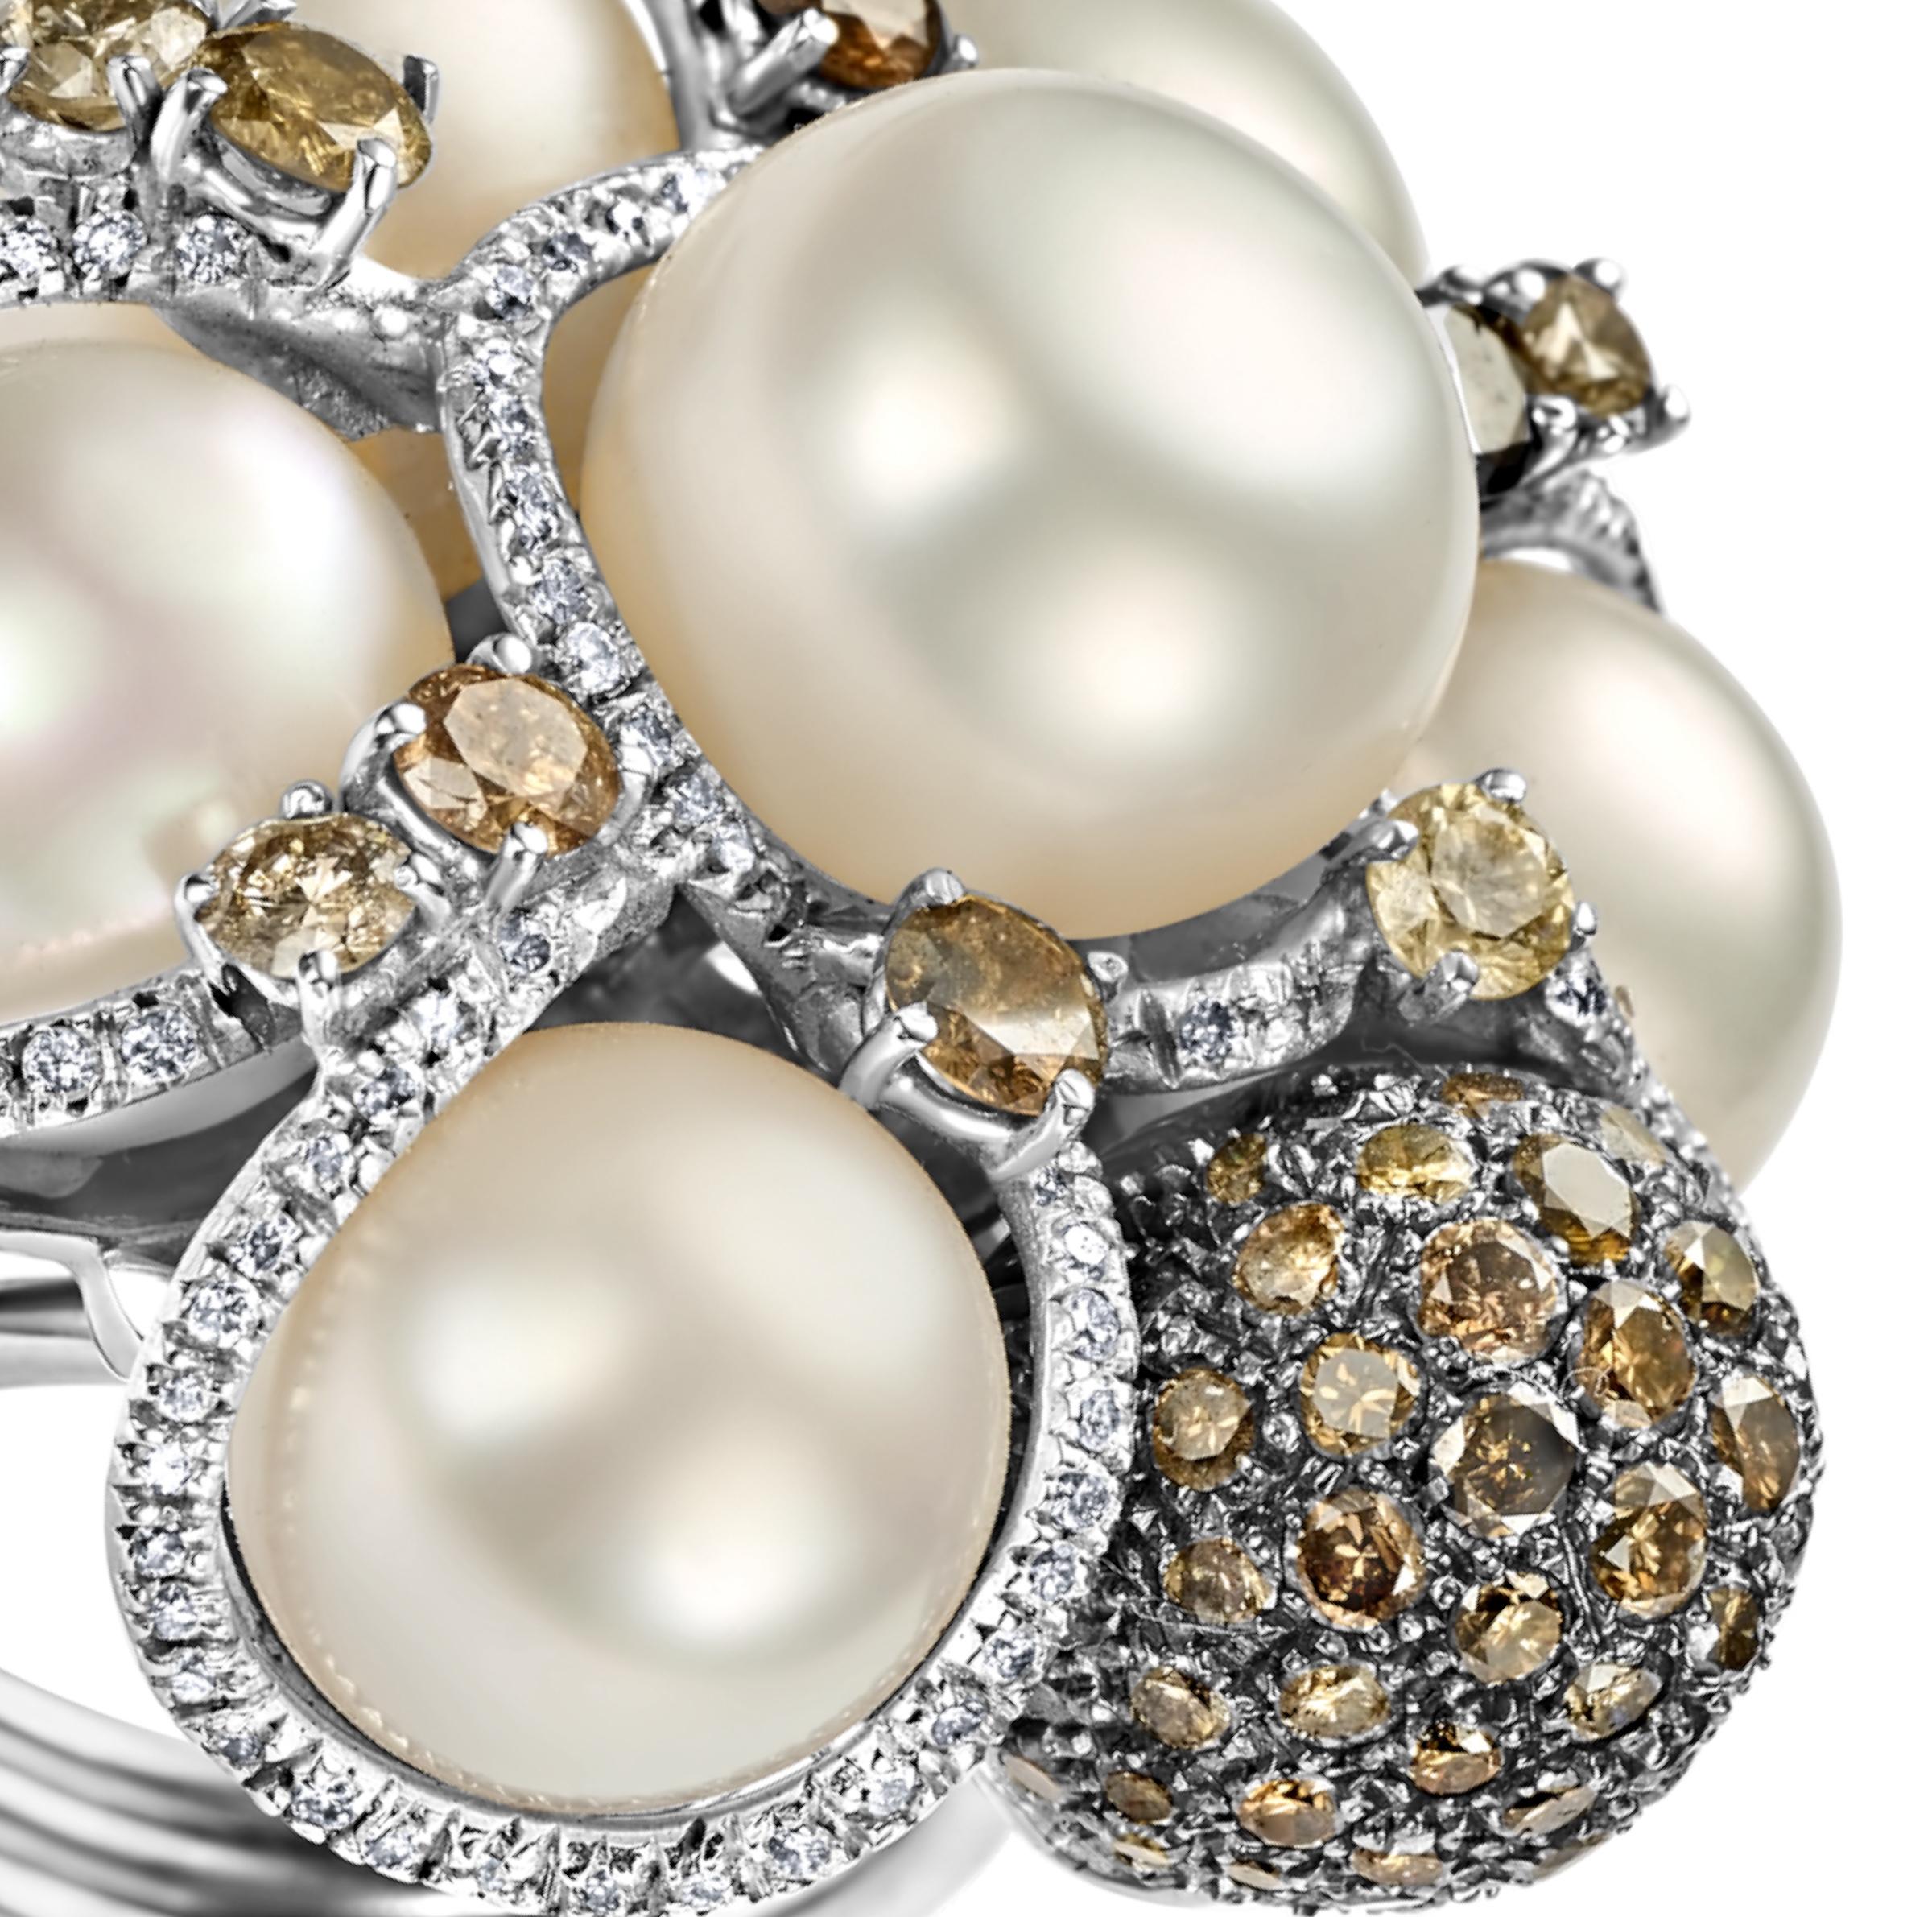 18kt Weißgold Ring mit 3,65ct Diamanten & Perlen, kann mit einem exklusiven passenden Armband gekauft werden.

Diamanten: Cognacfarbene und weiße Diamanten zusammen 3,65 ct

Perlen: 6 große Südseeperlen  Perlen, mittlere Perle ist 12,5 mm

MATERIAL: